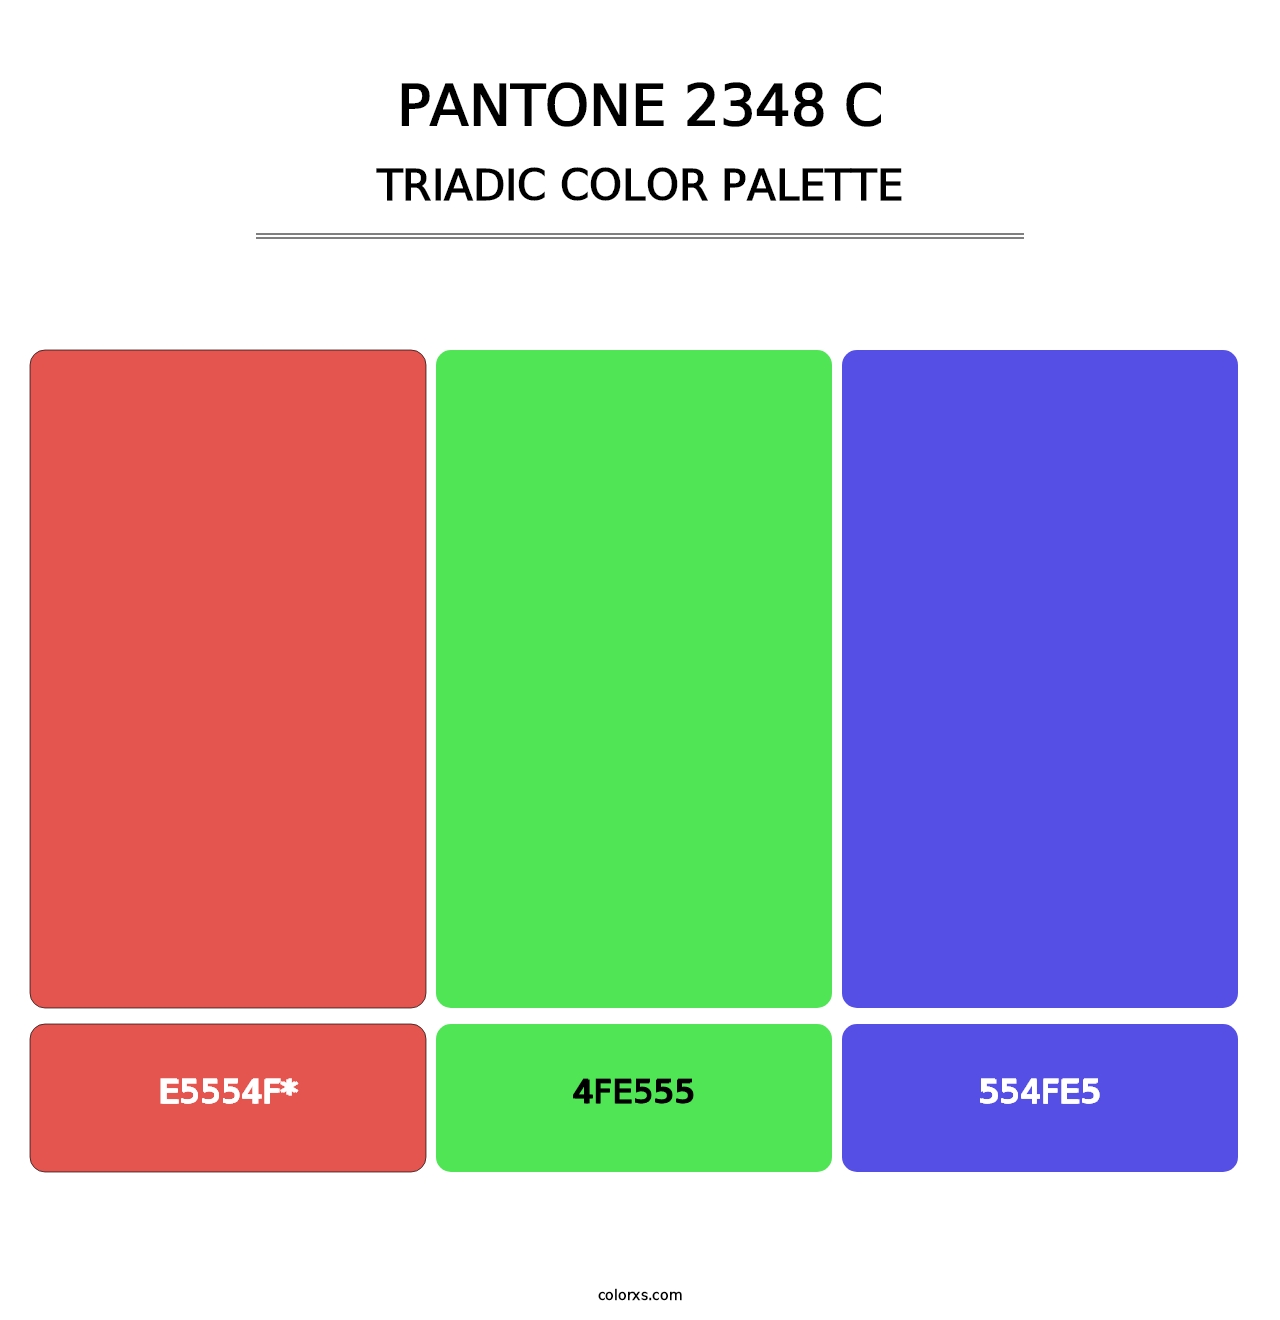 PANTONE 2348 C - Triadic Color Palette